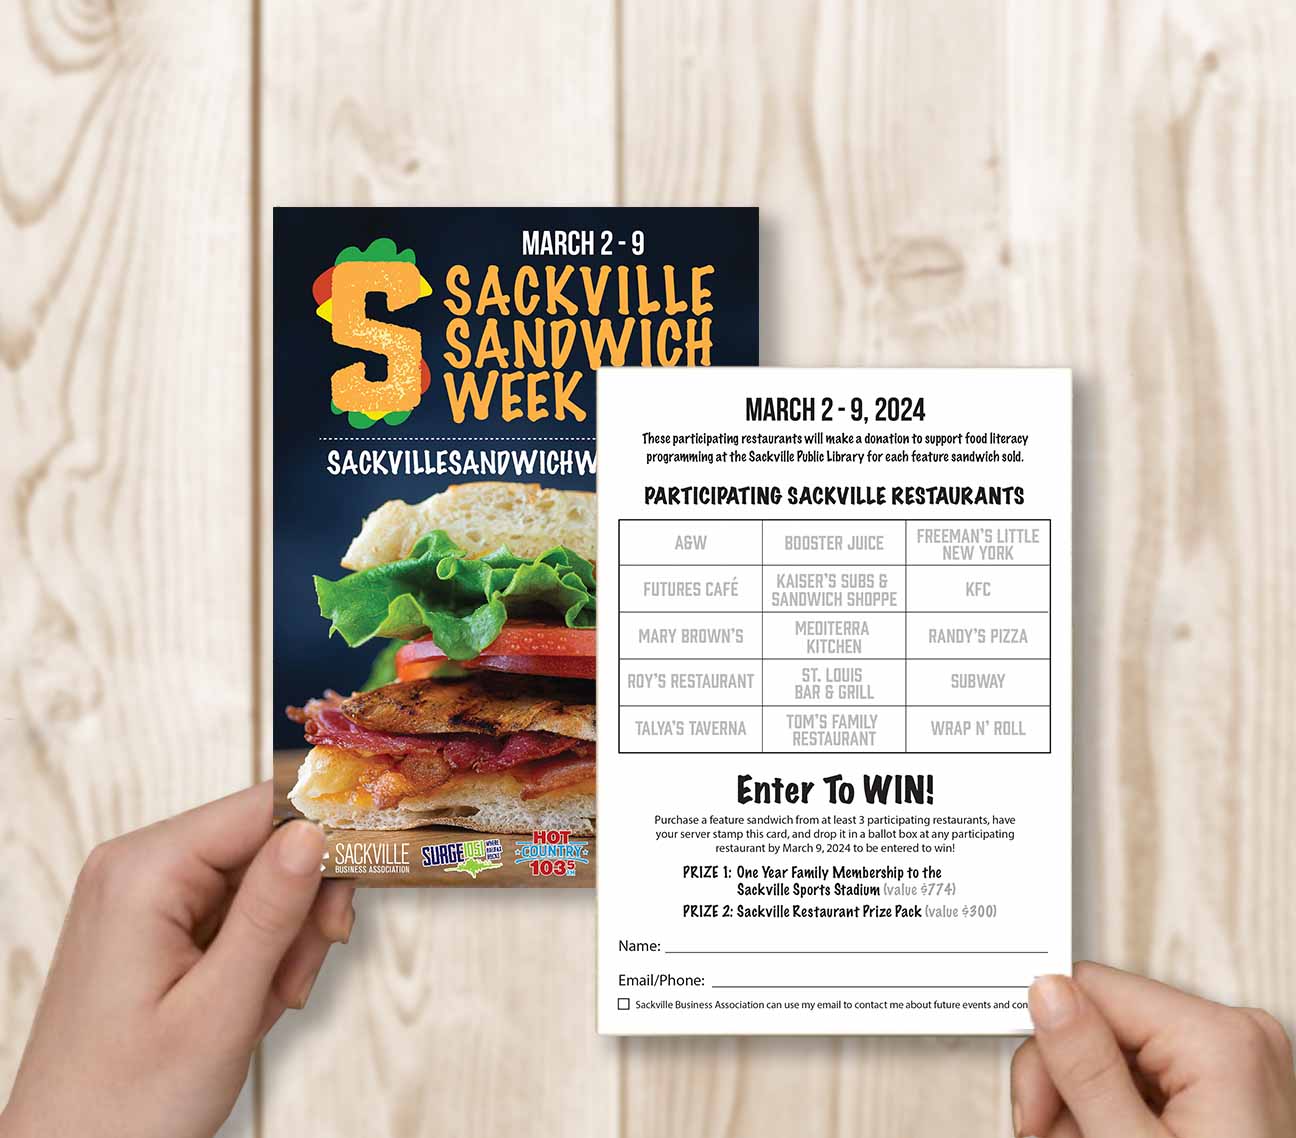 Hands holding the Sackville Sandwich Week passport